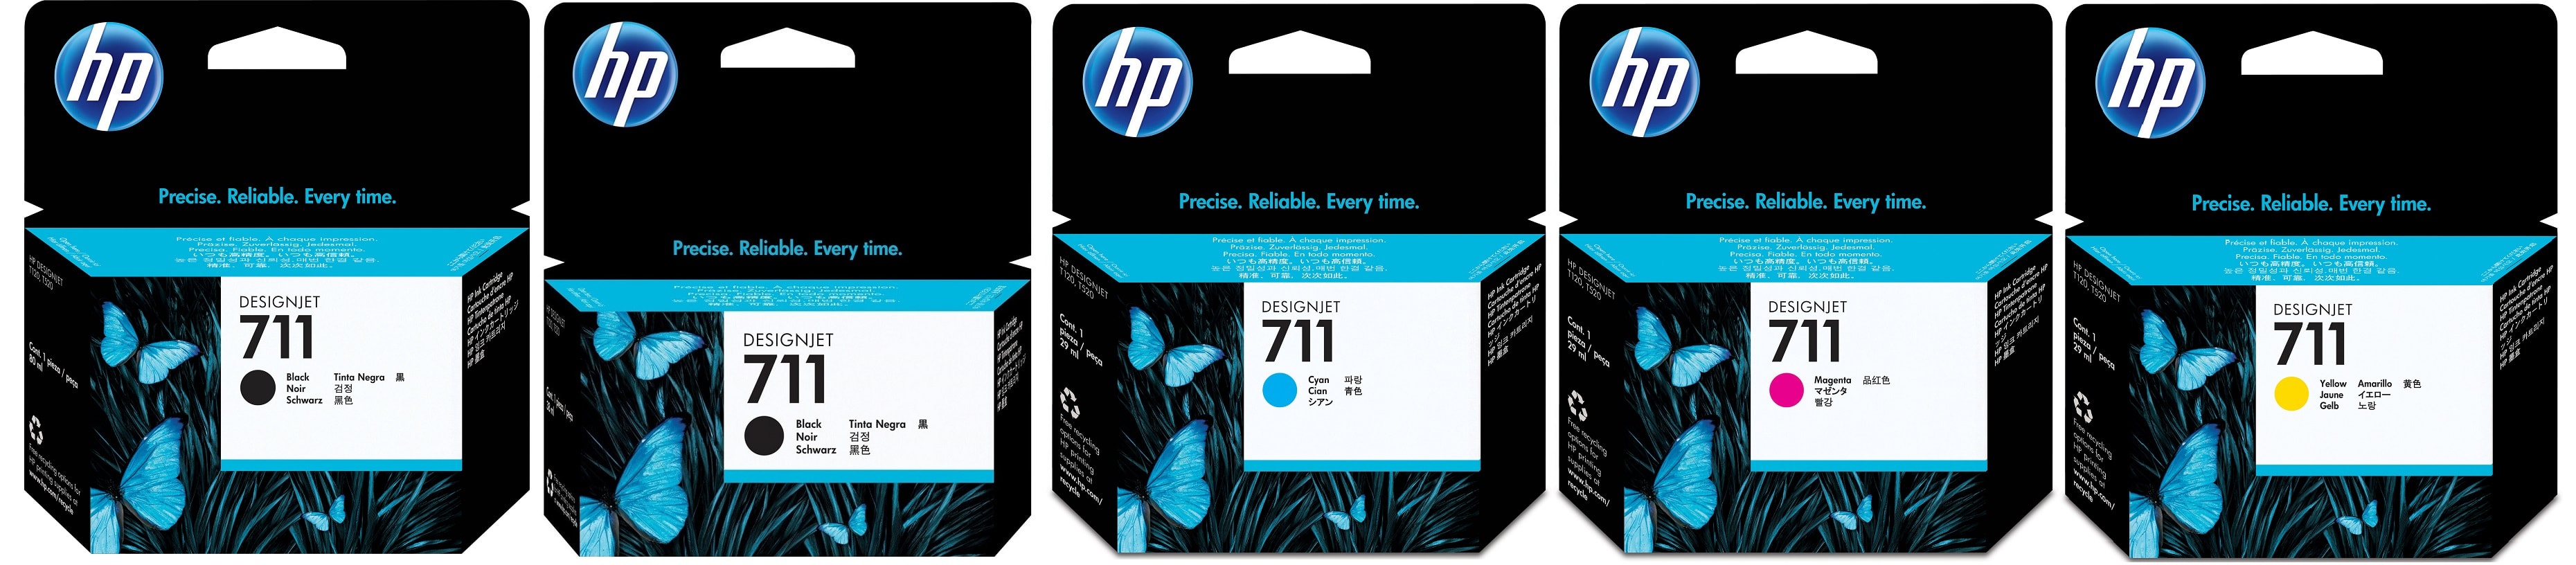 Картриджи hp 711 для HP HP Designjet T120. Купить комплект оригинальных картриджей.